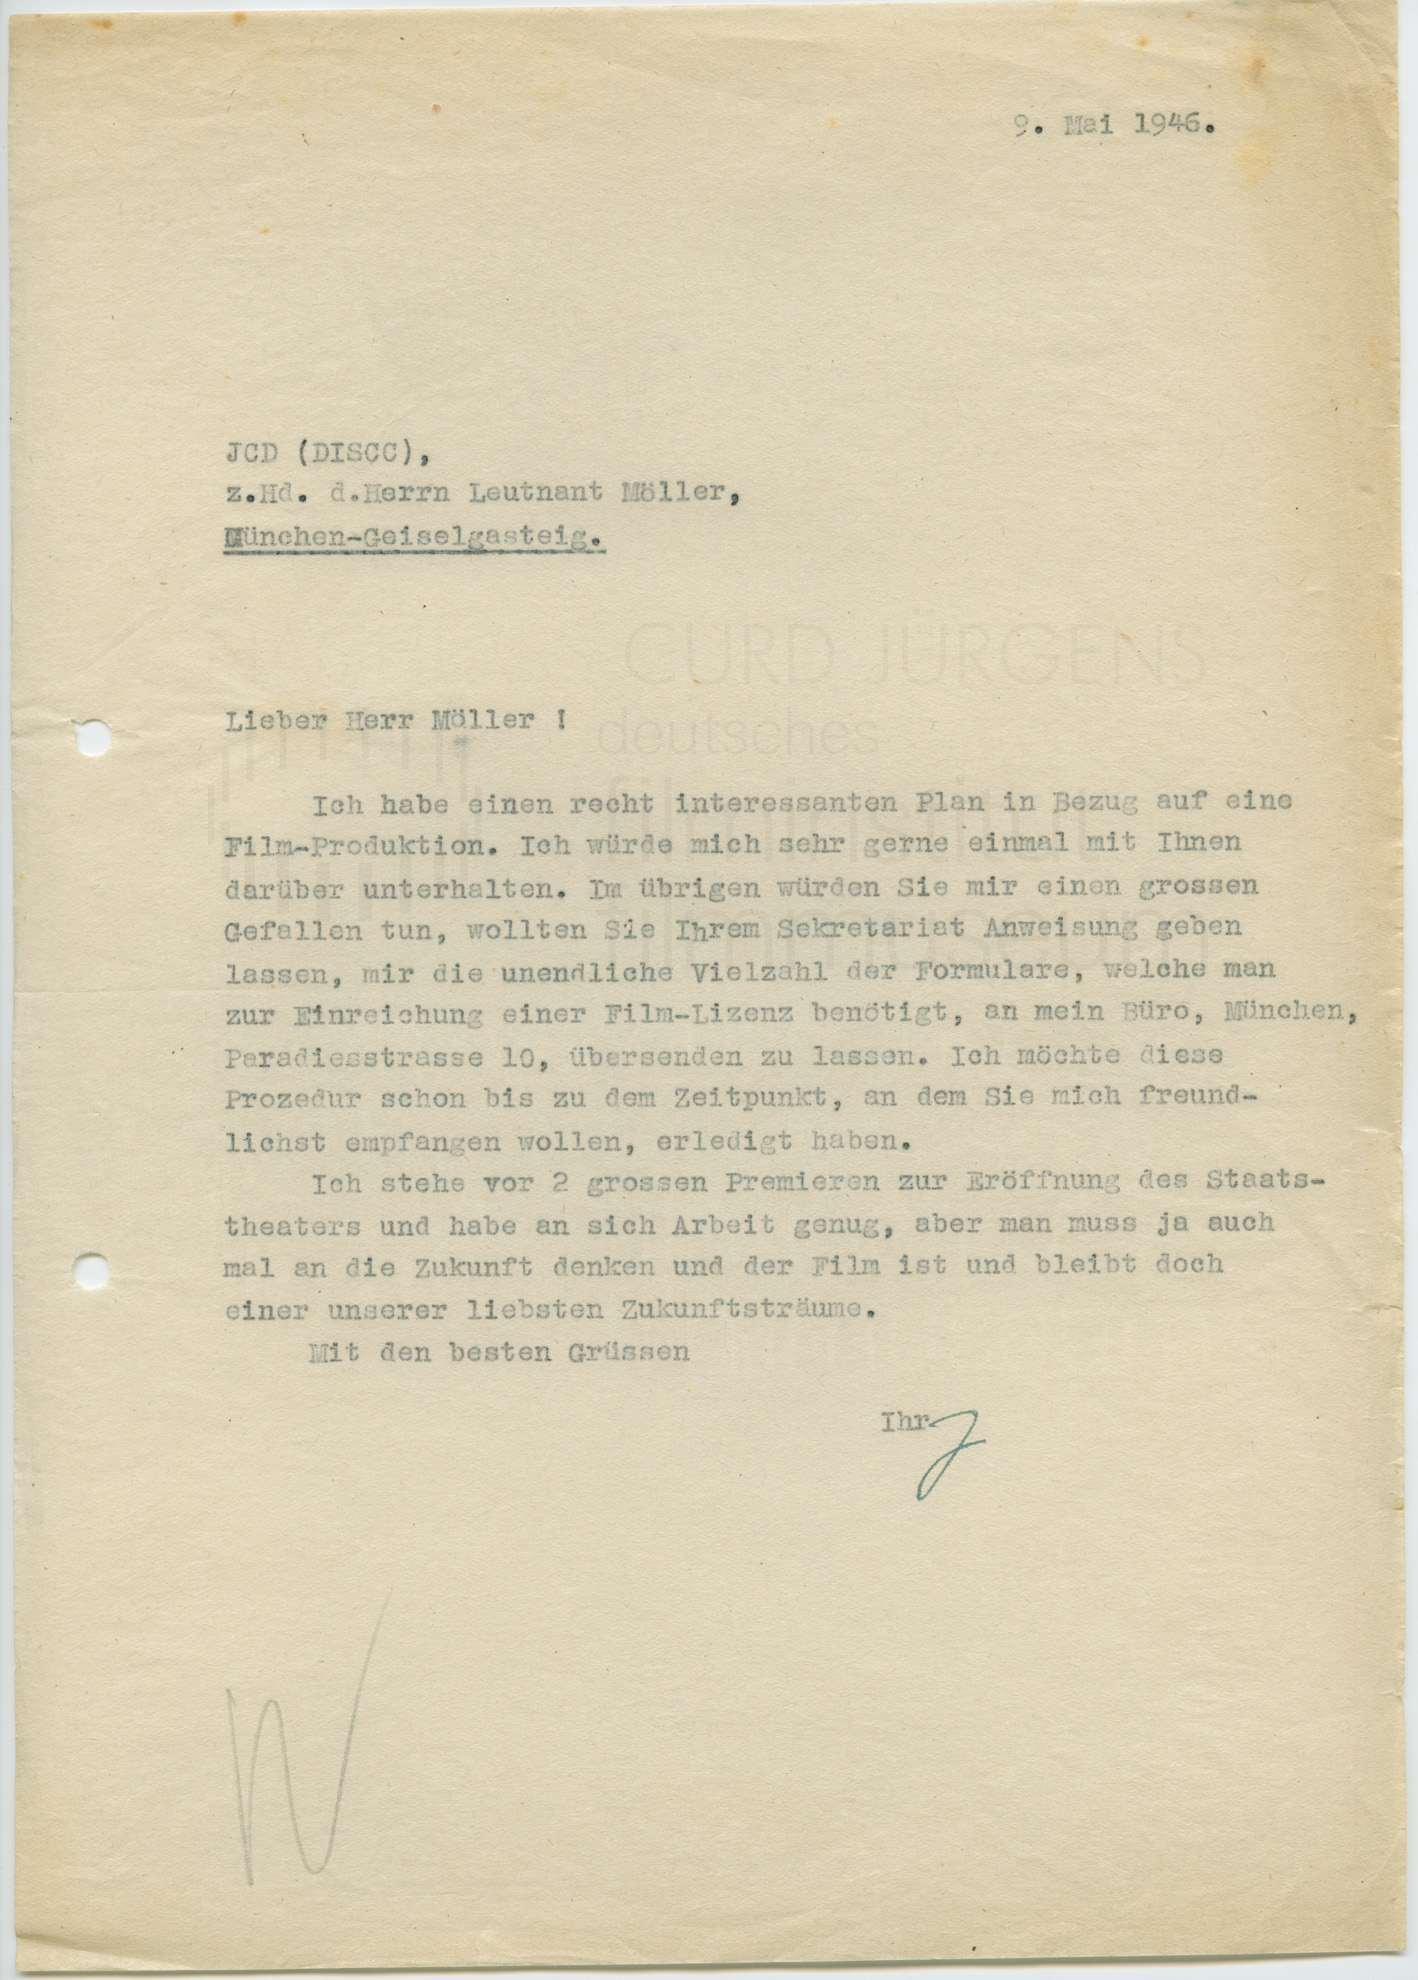 Curd Jürgens an Paul E. Moeller. [München], 9.5.1946